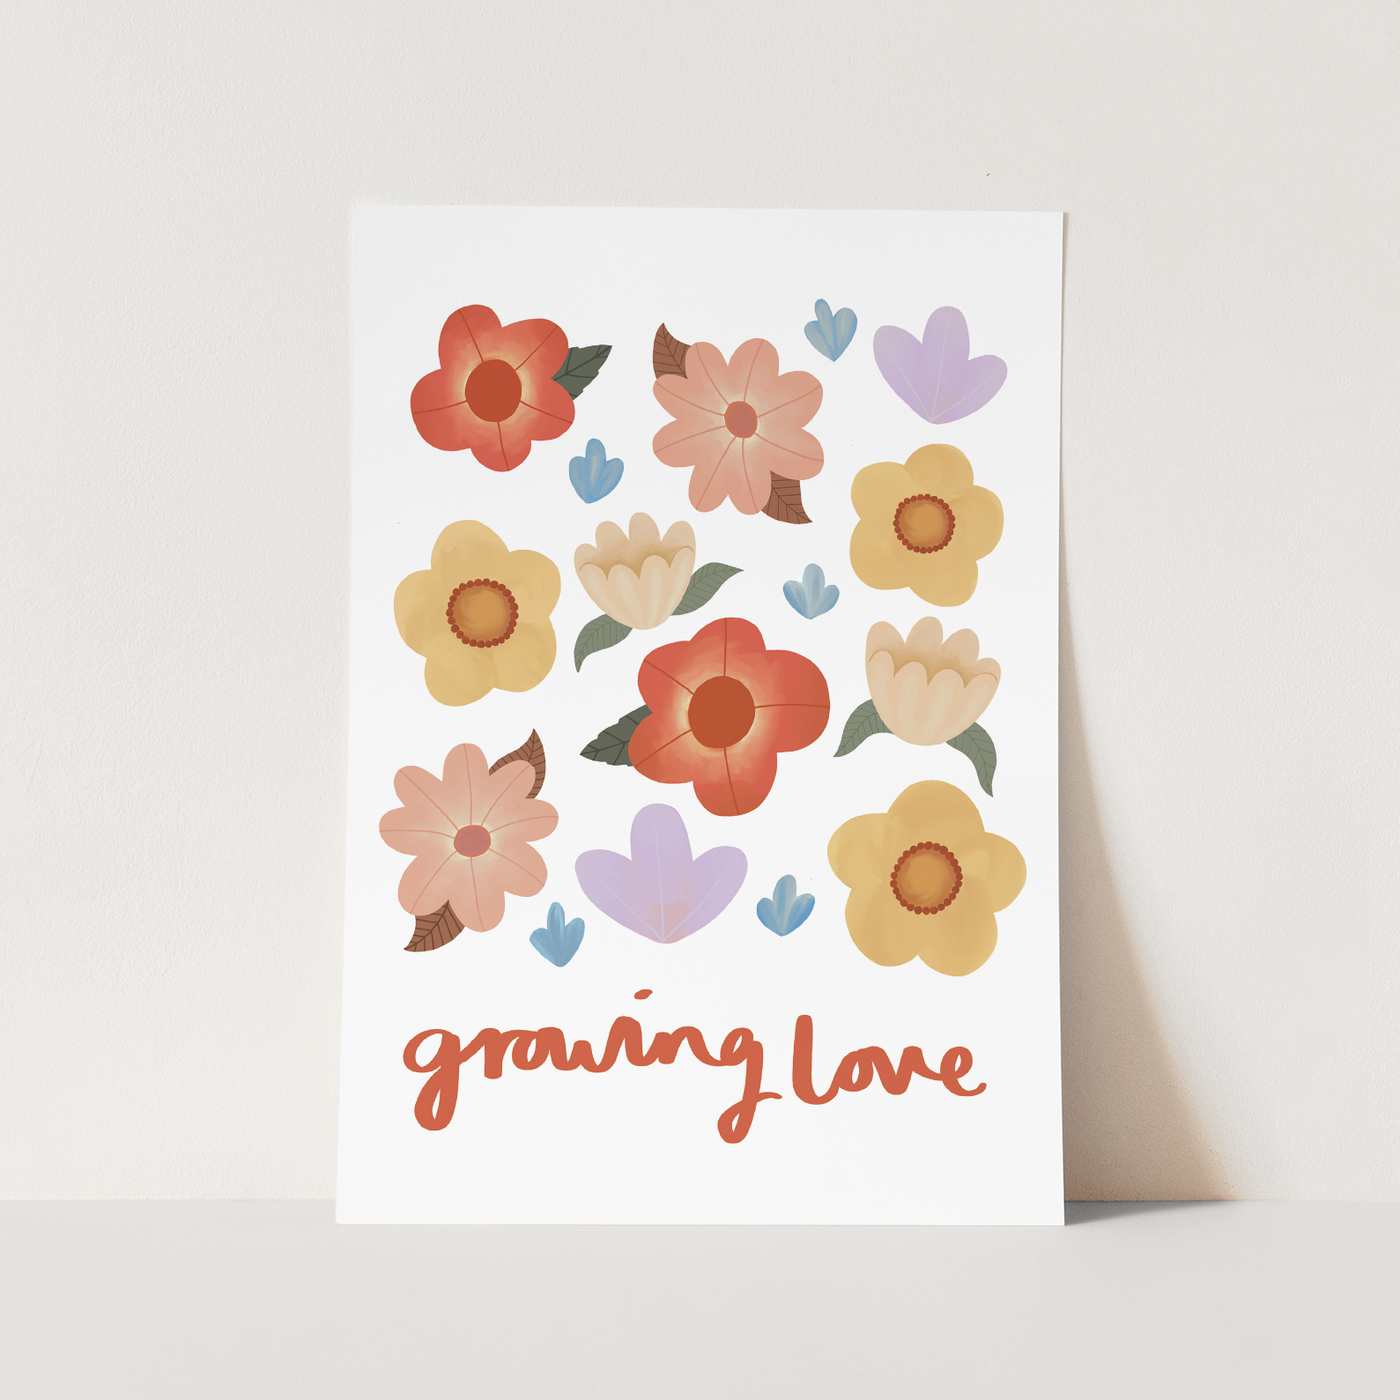 Growing love print